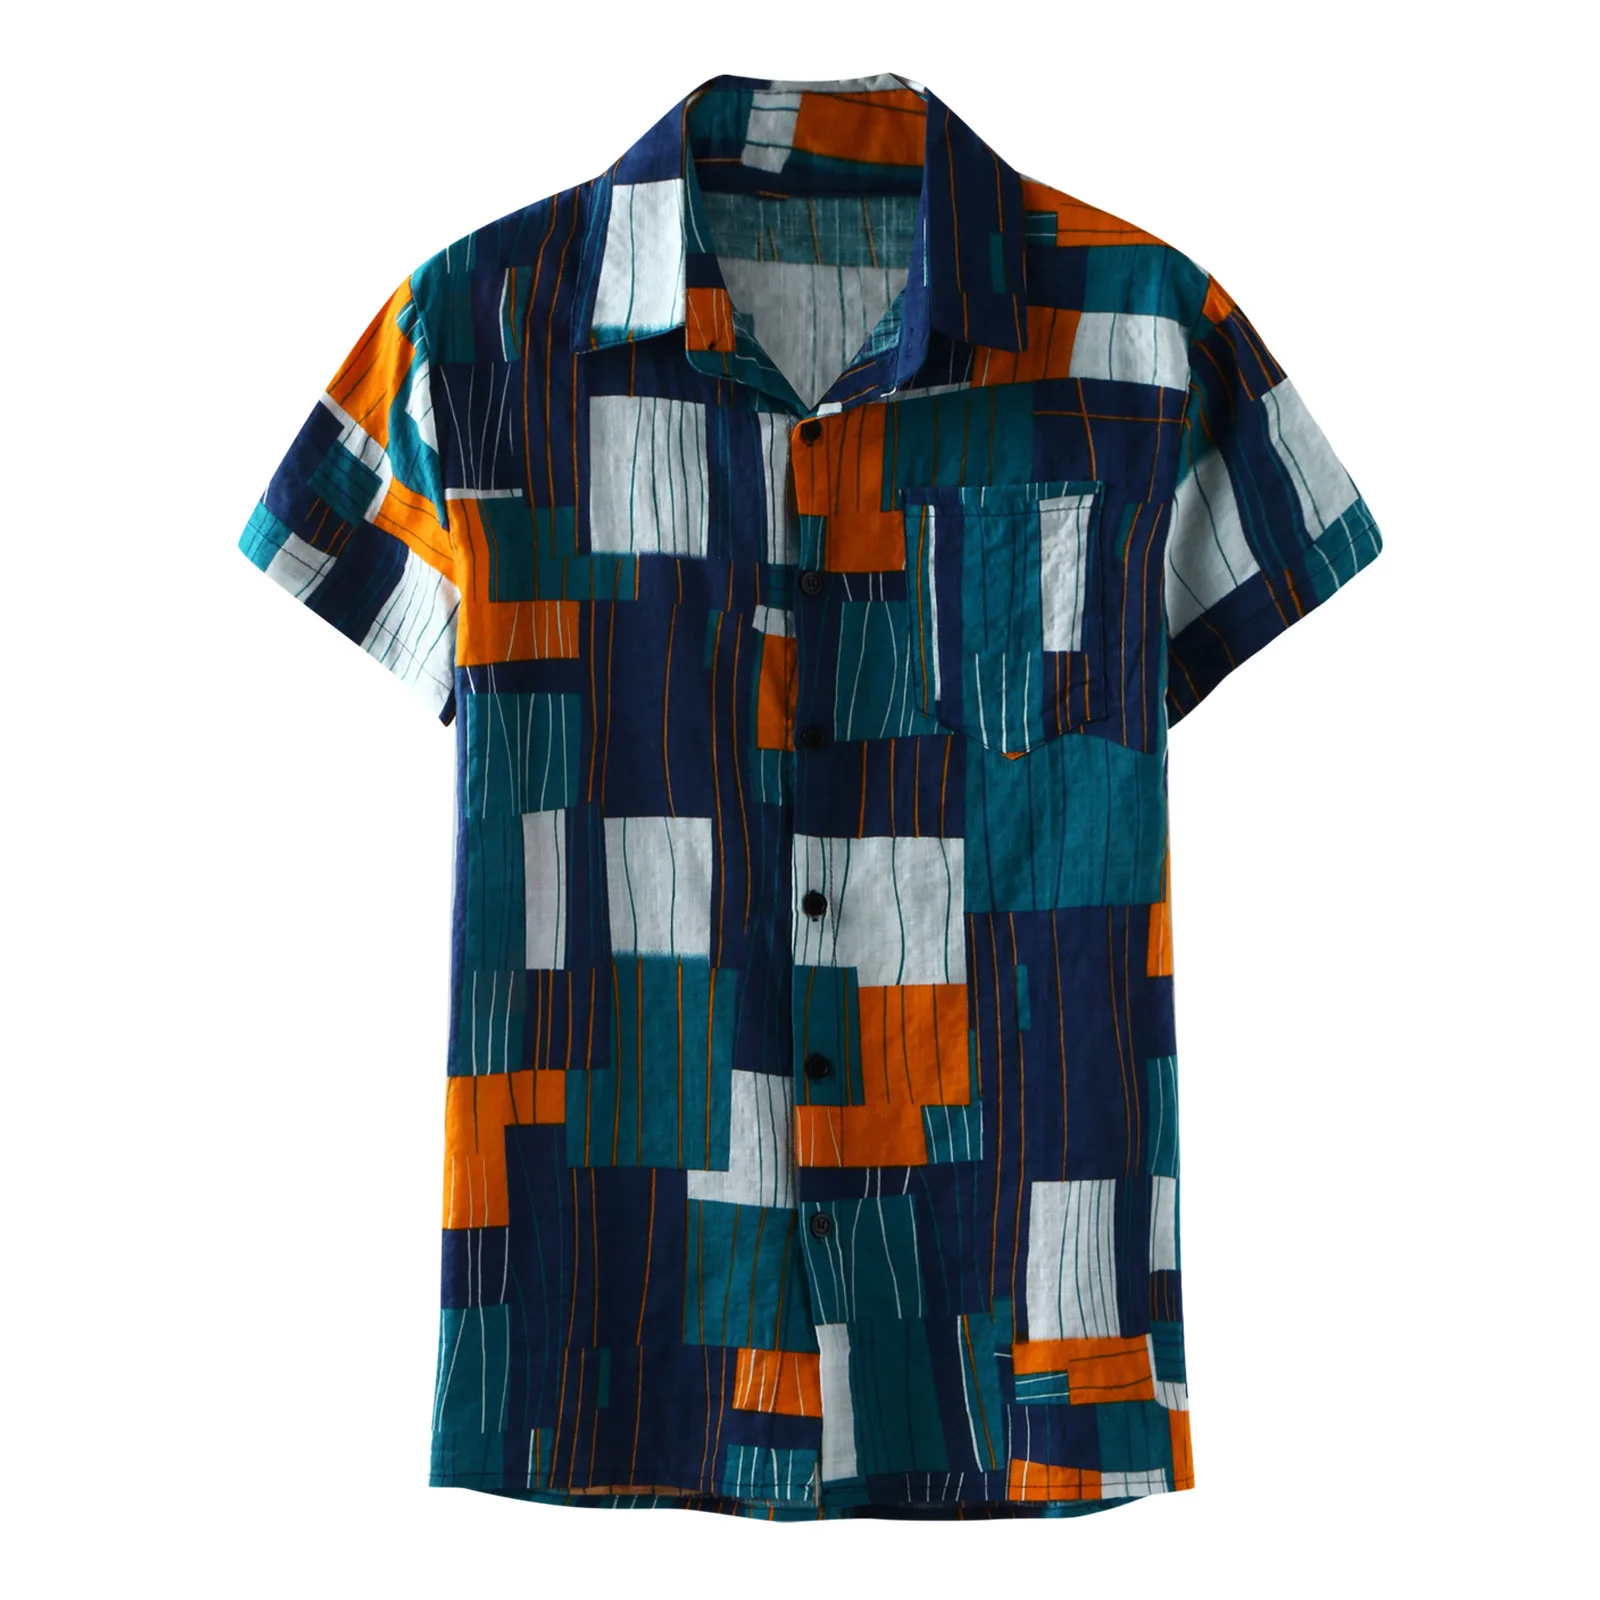 

Гавайская рубашка для мужчин, хлопково-льняная одежда с цветным блочным принтом, рубашка с короткими рукавами на пуговицах, Свободный Топ, П...